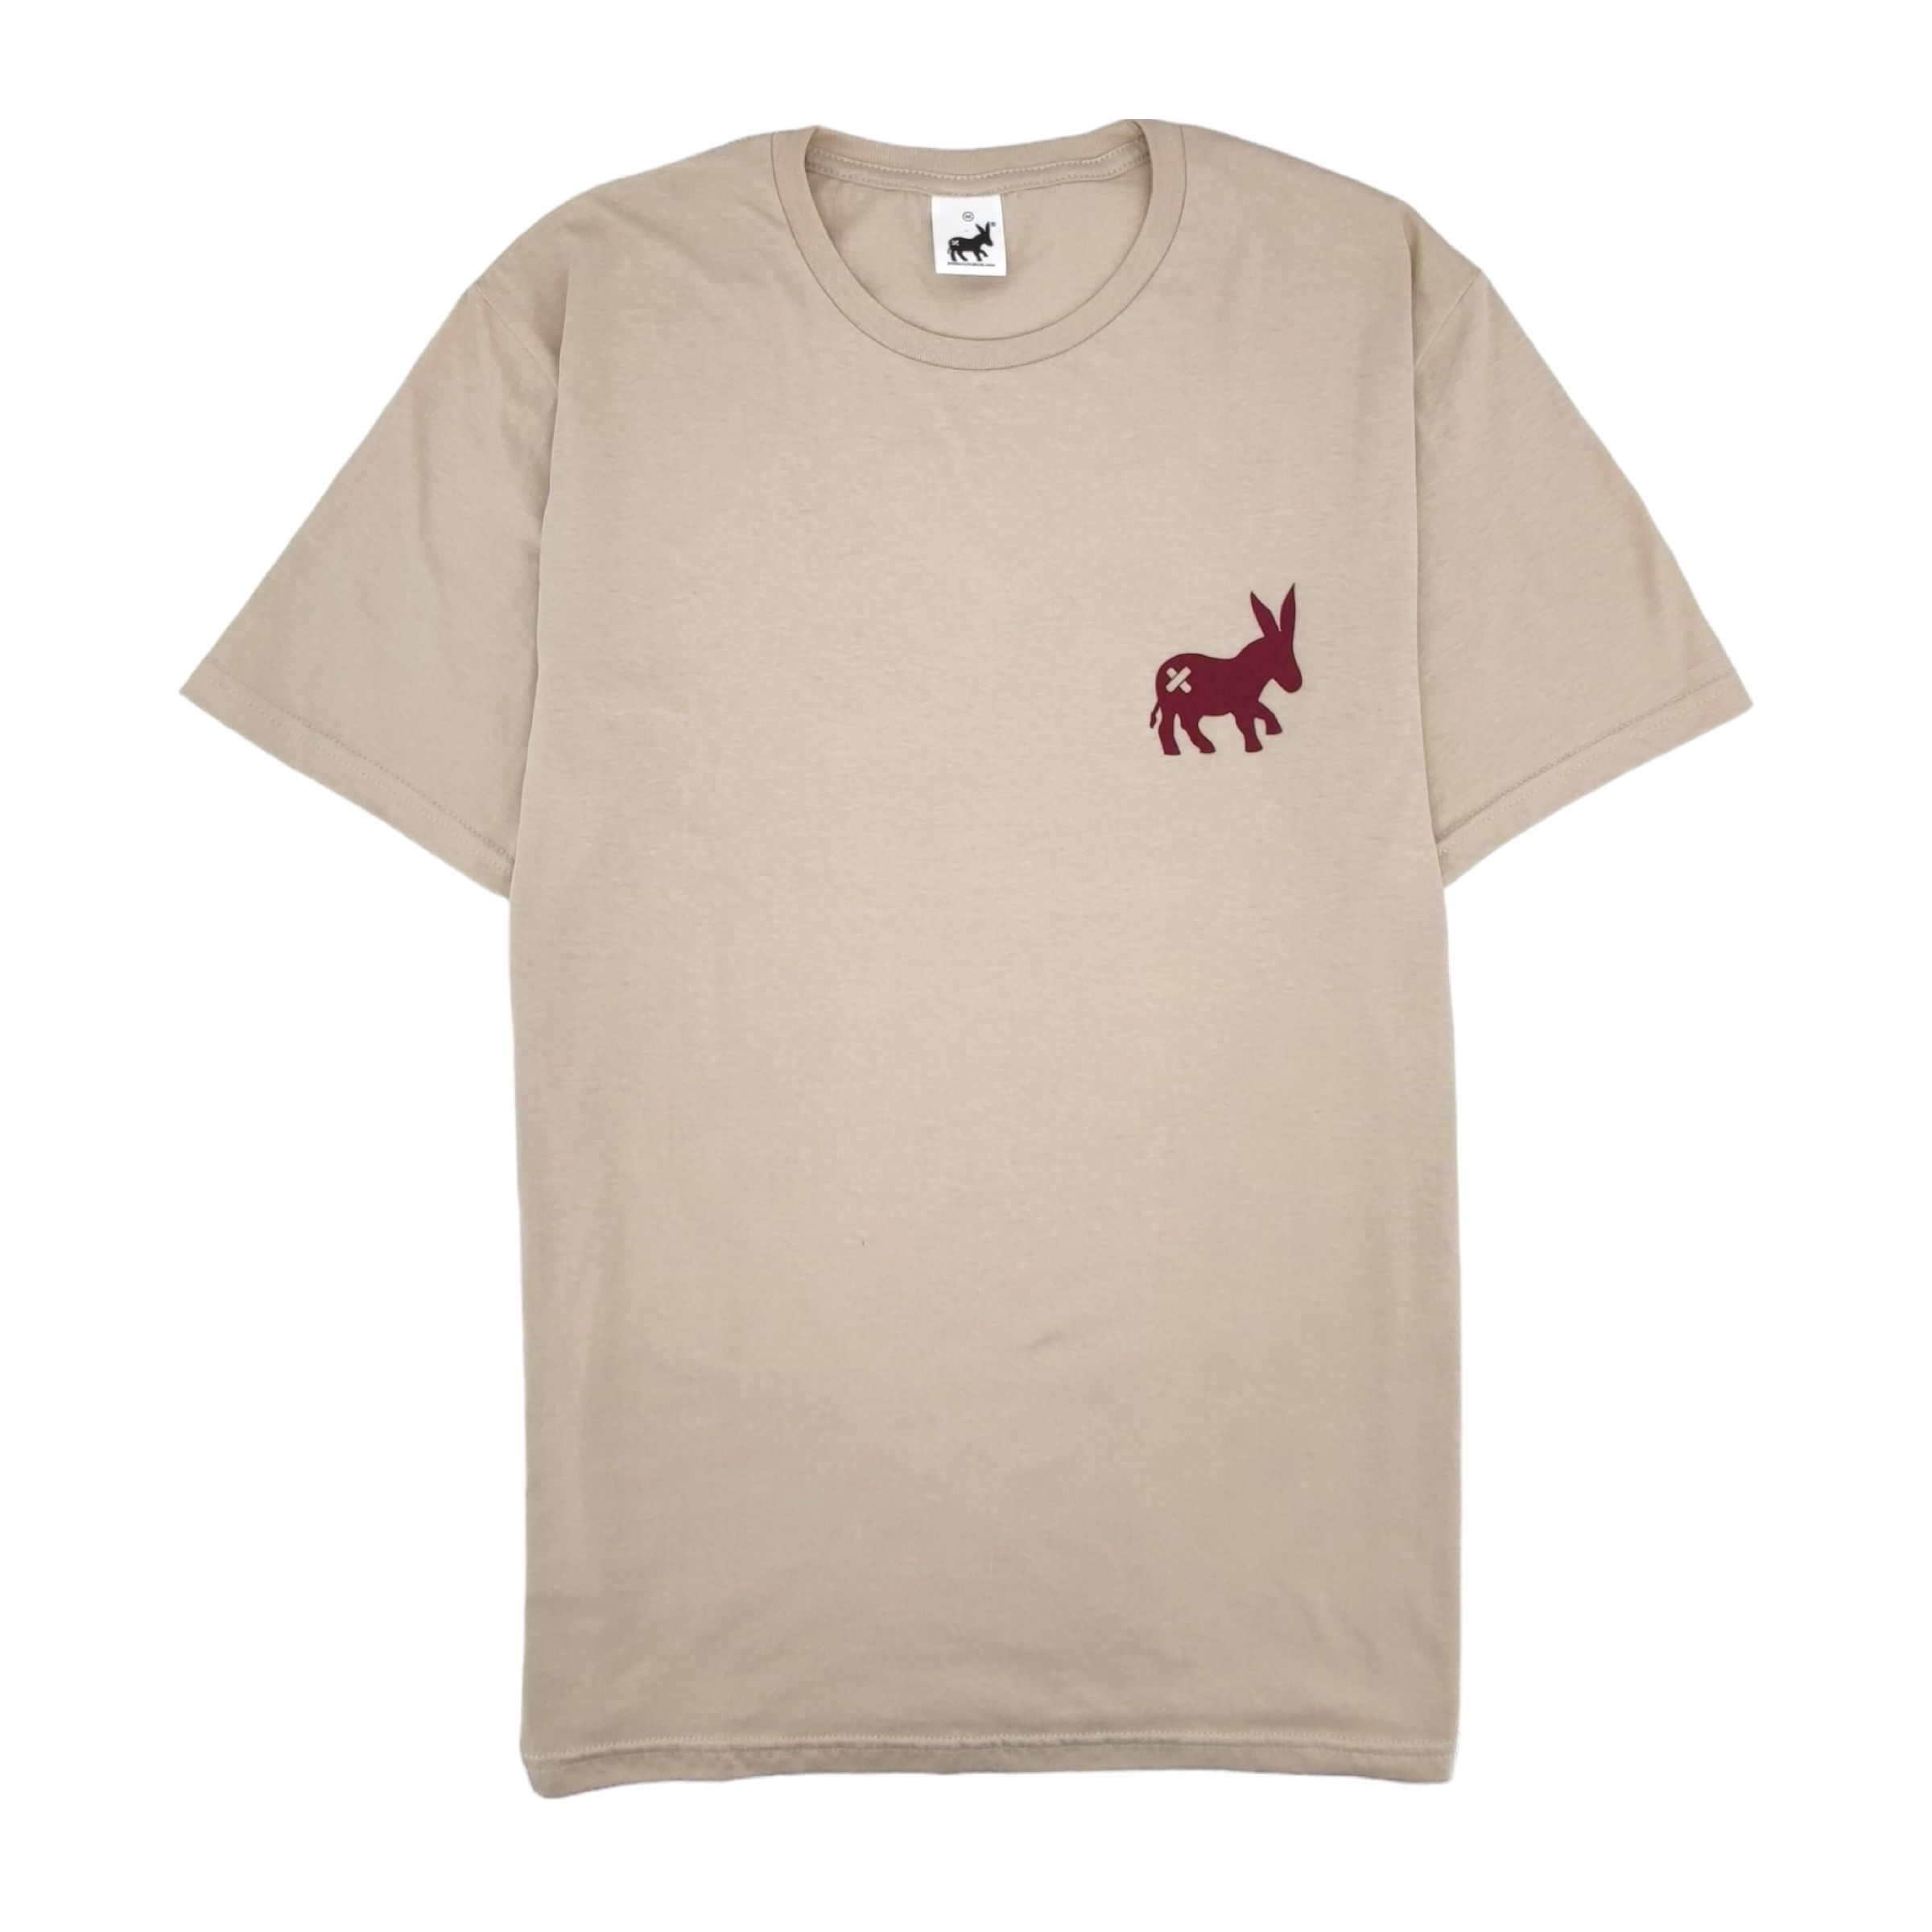 SENSA CUNISIUN T-Shirt Classic Logo Uomo Beige/Bordeaux